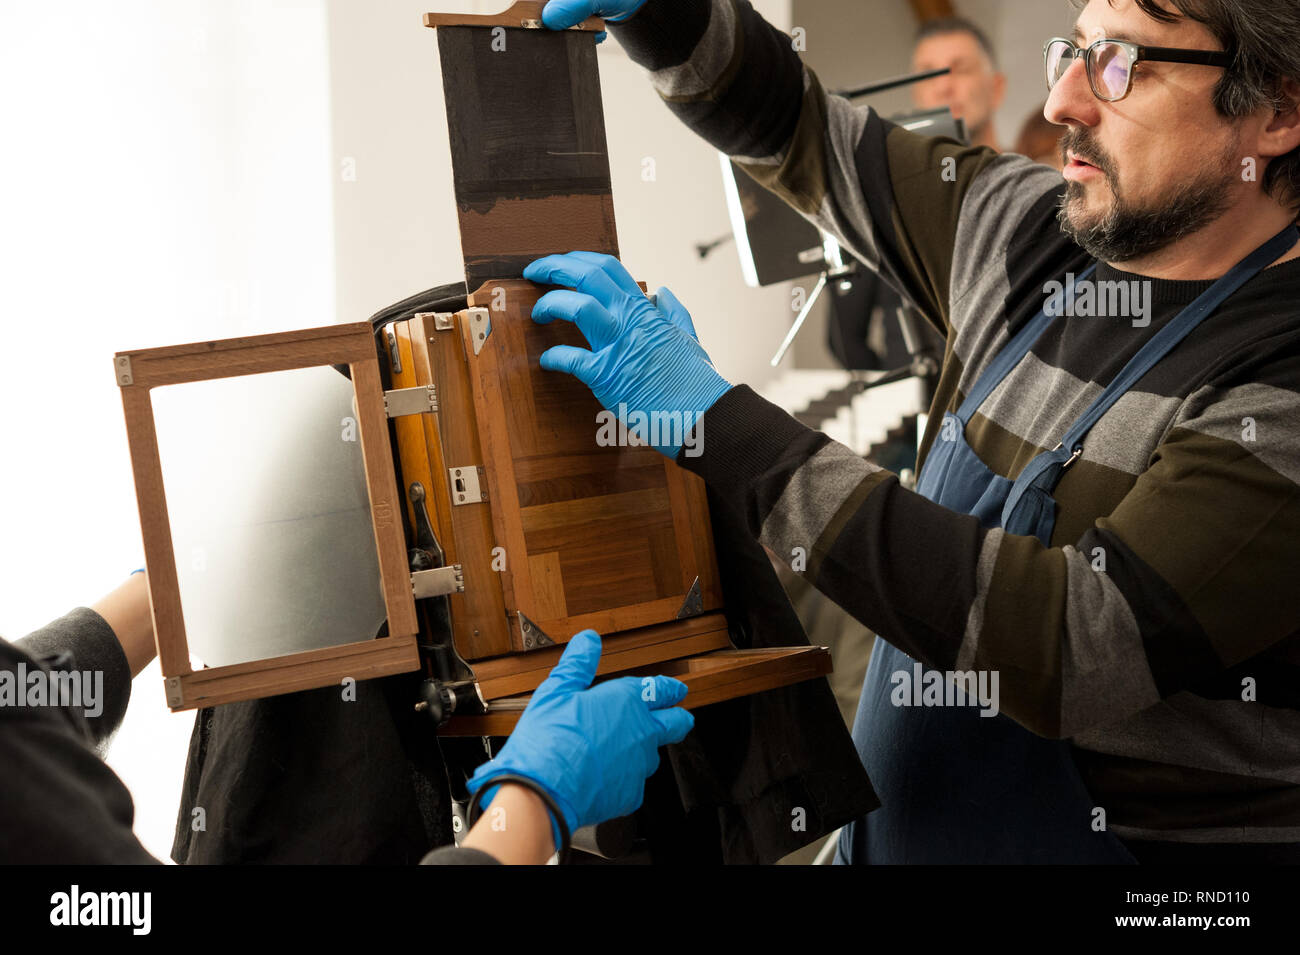 Jeux photographe un vieux appareil photo grand format plaque photographique avec châssis, avant le tournage. Banque D'Images